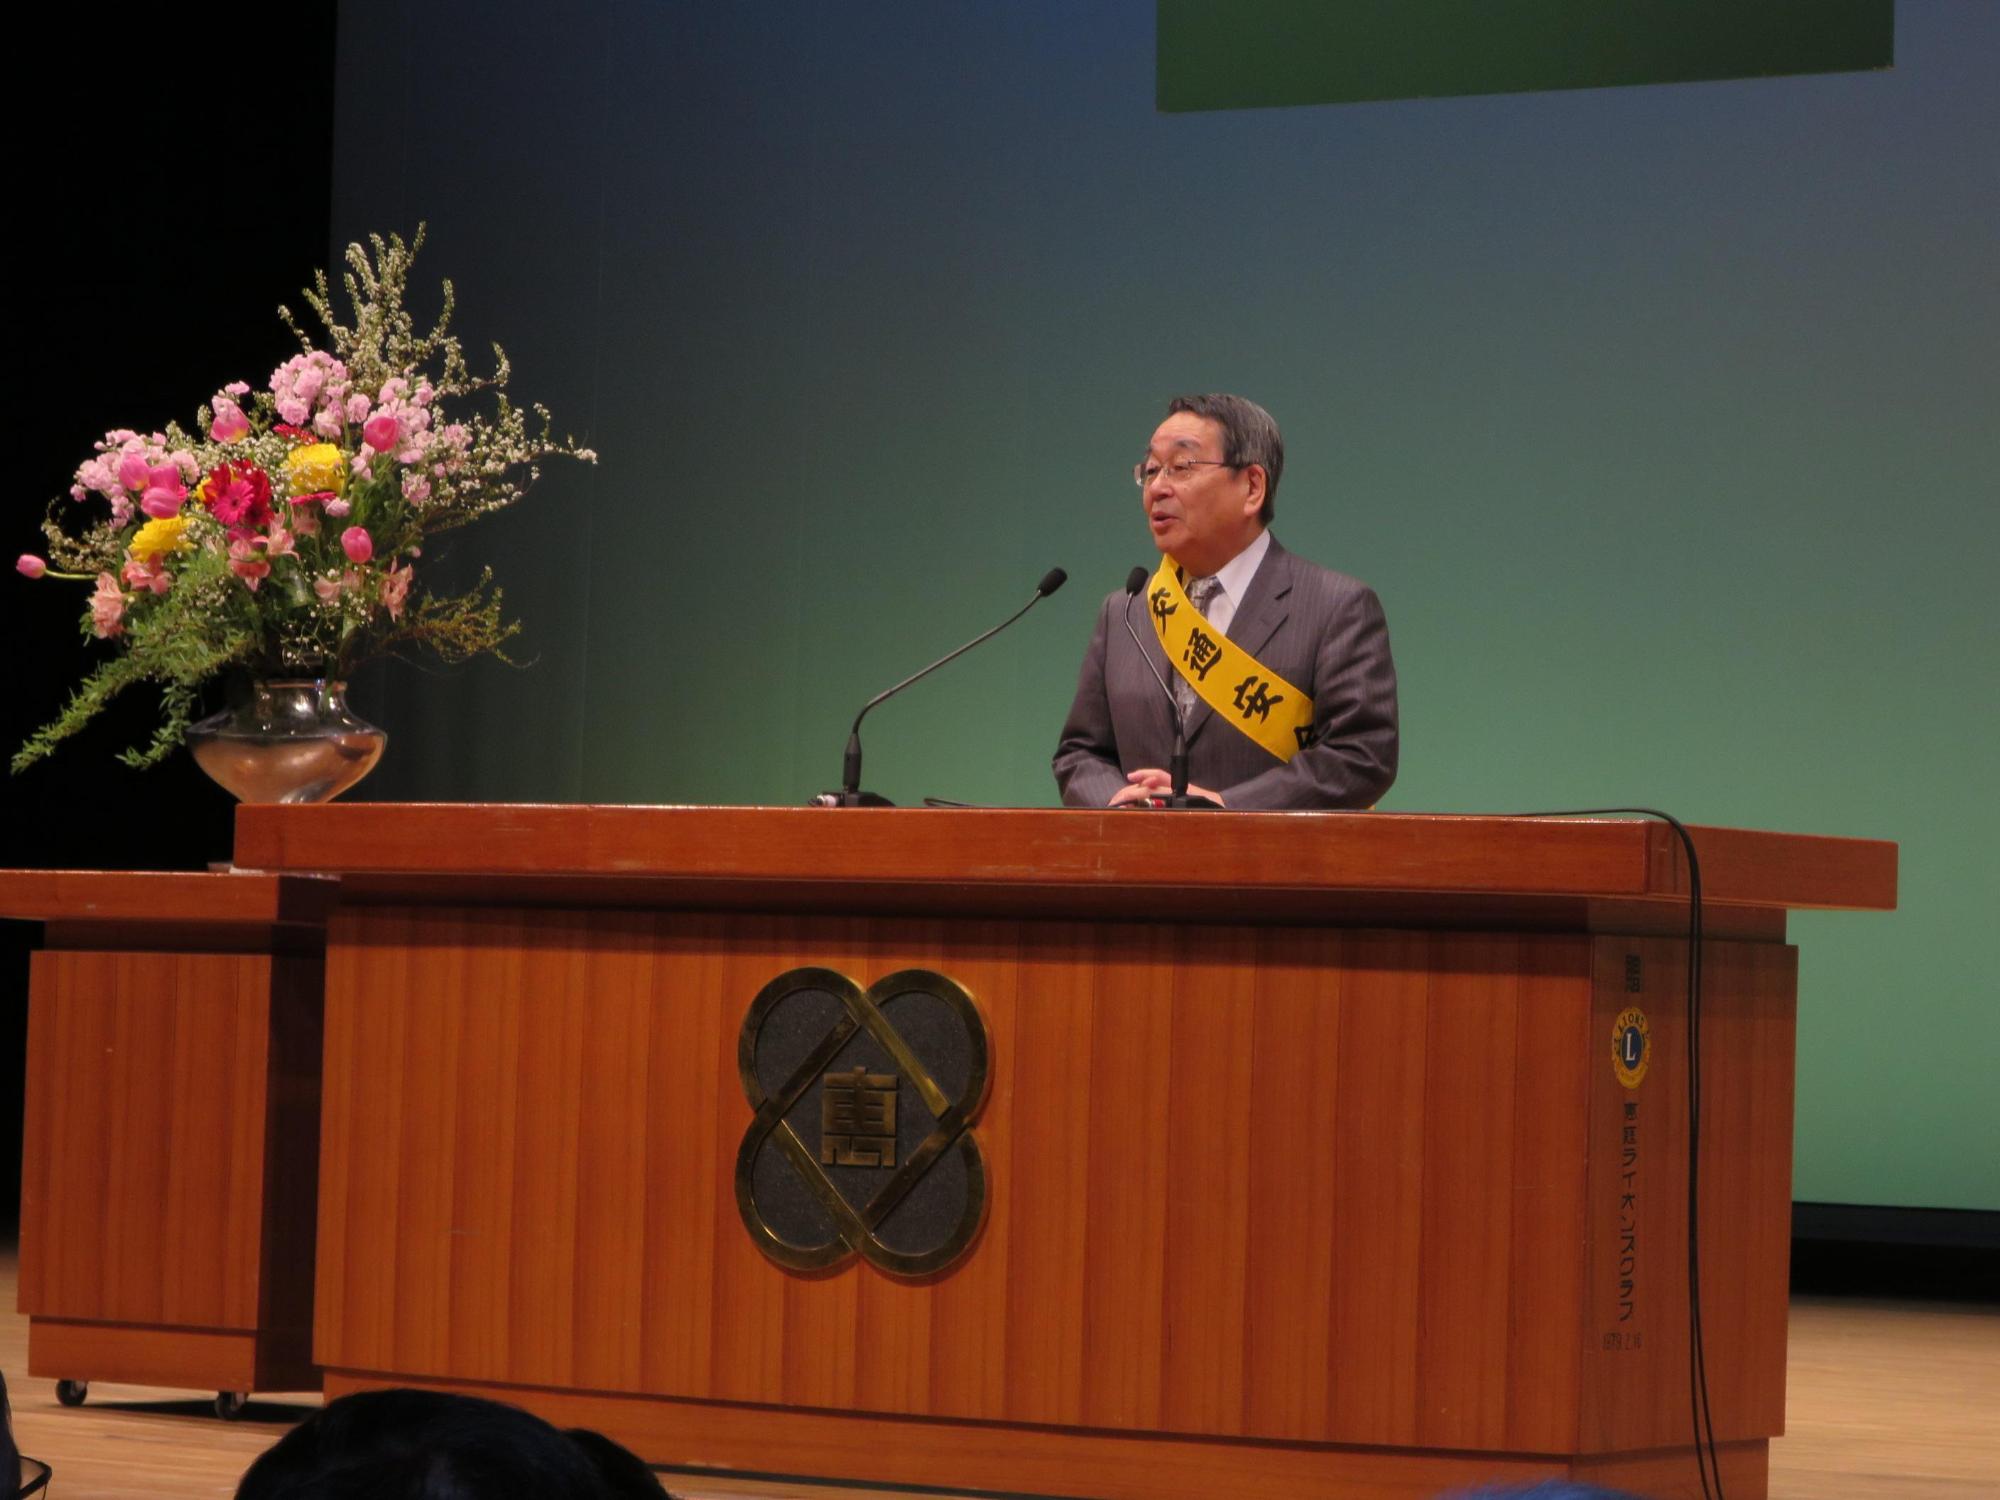 「交通事故抑止市民大会」にて挨拶をしている原田市長の写真